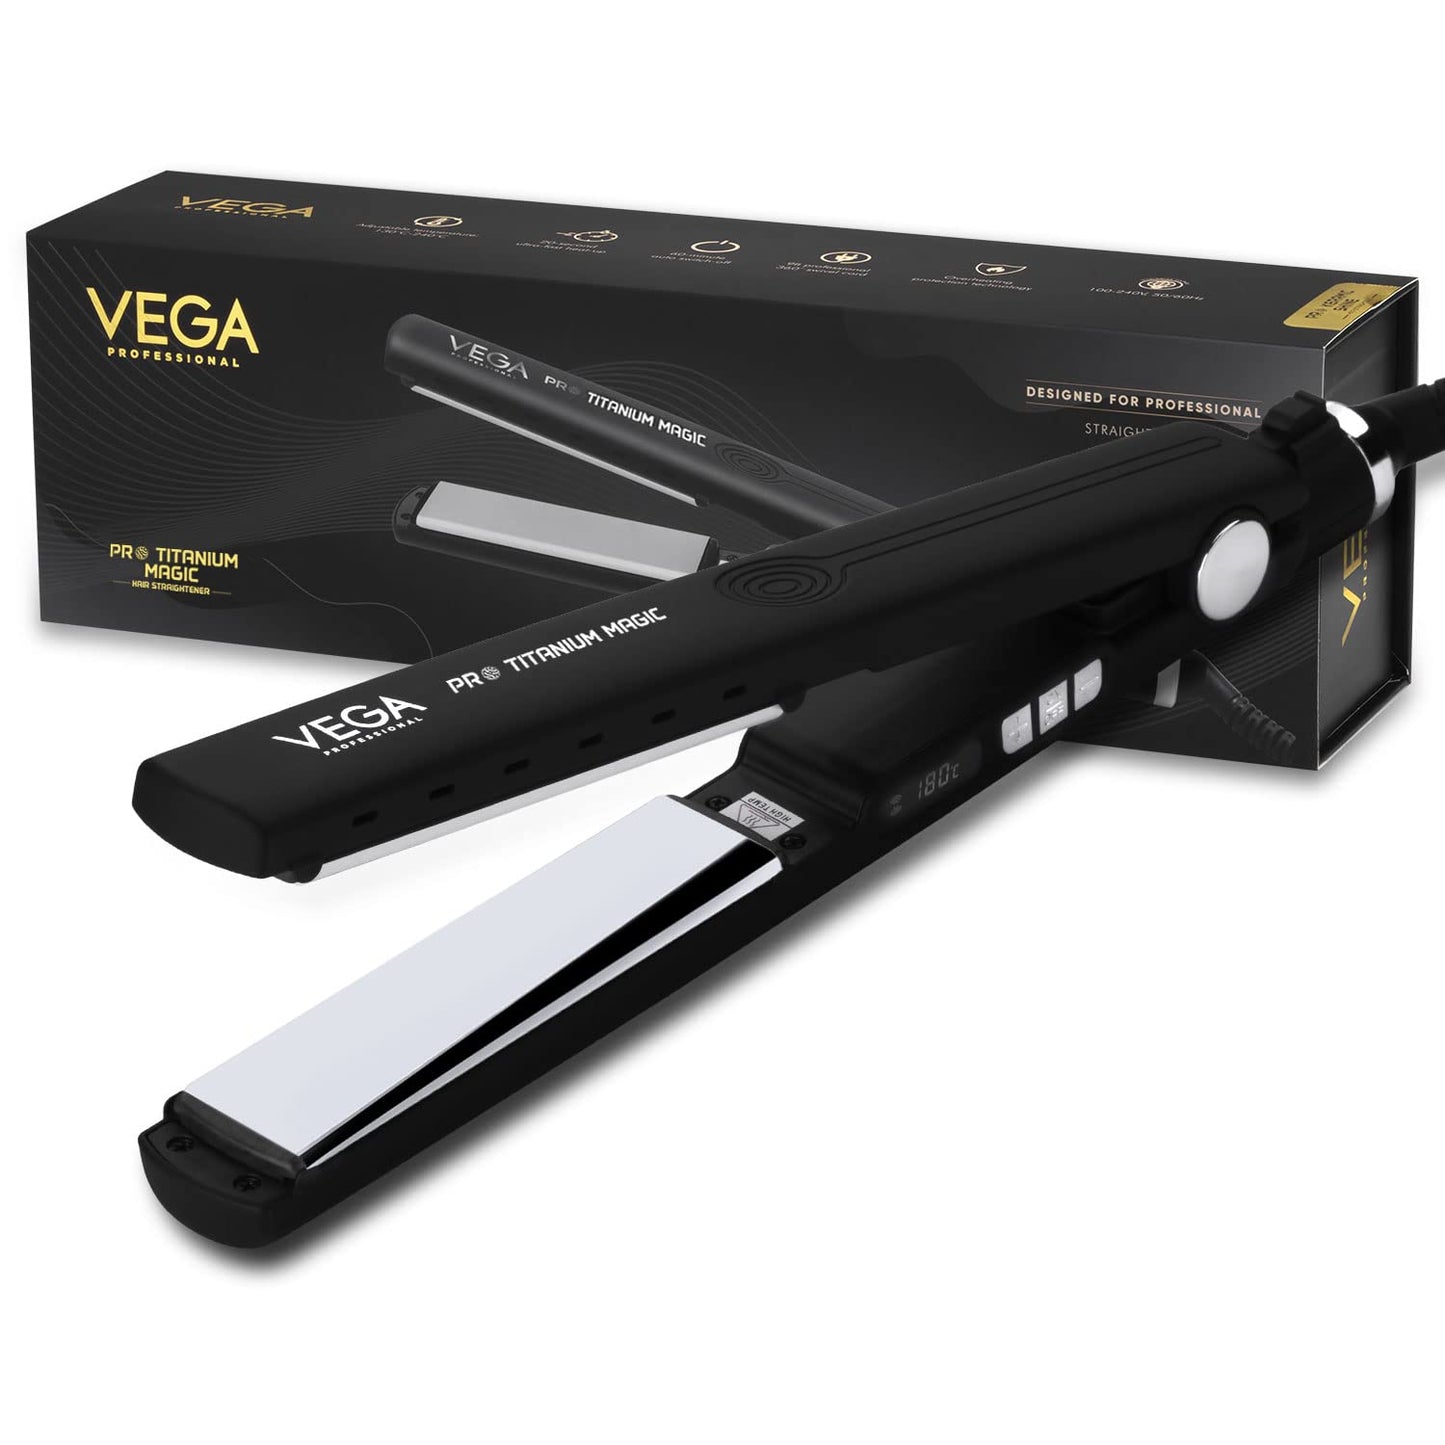 Vega Professional Pro Titanium Magic Hair Straightener (VPPHS-12)